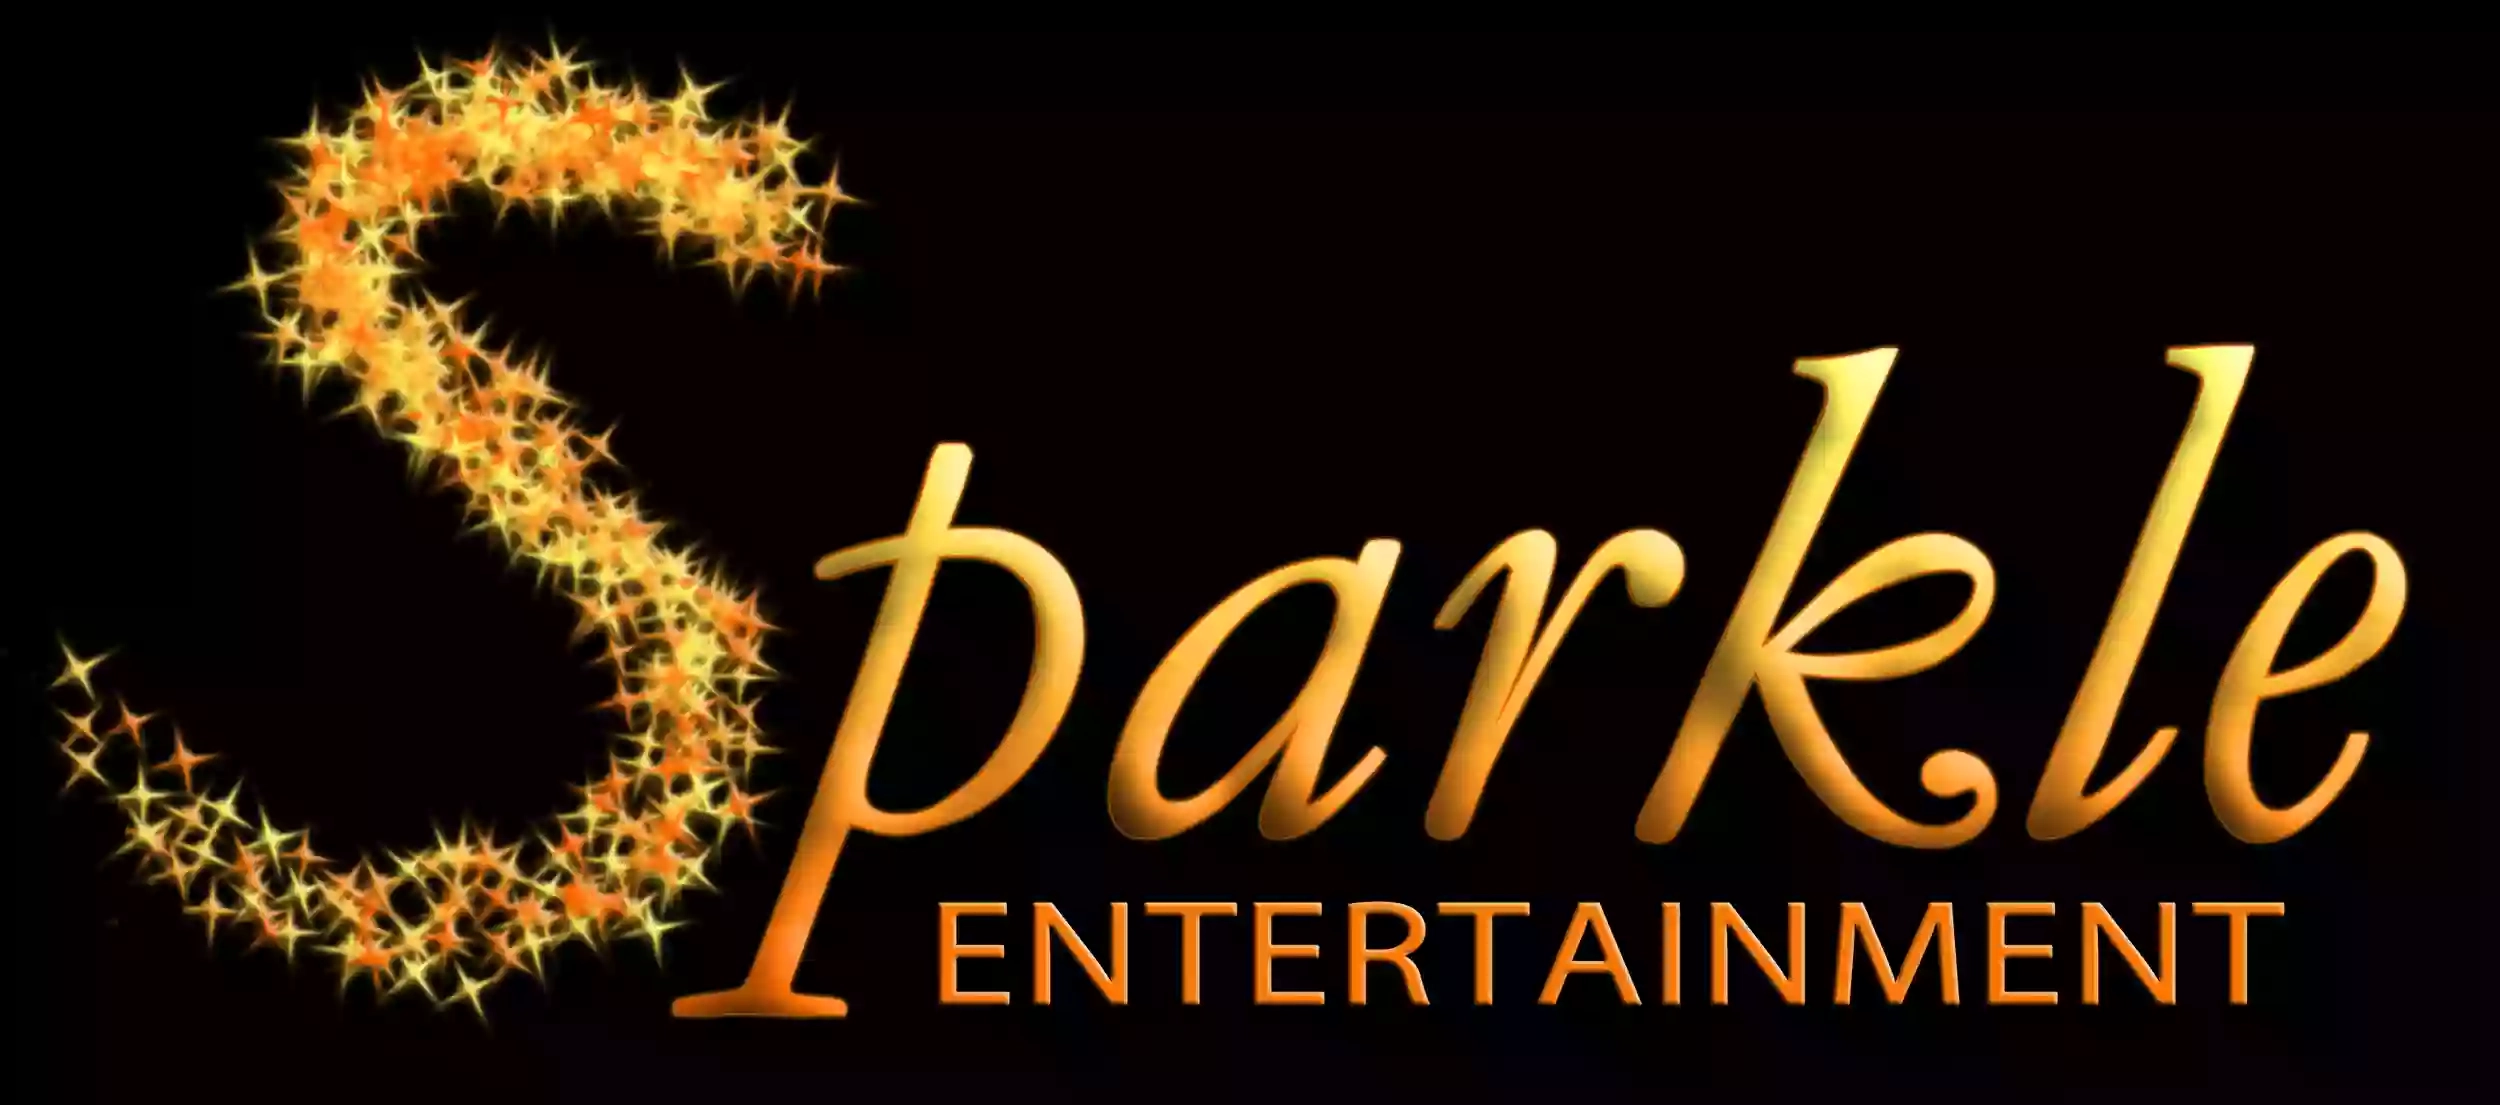 Sparkle Entertainment - Norwich